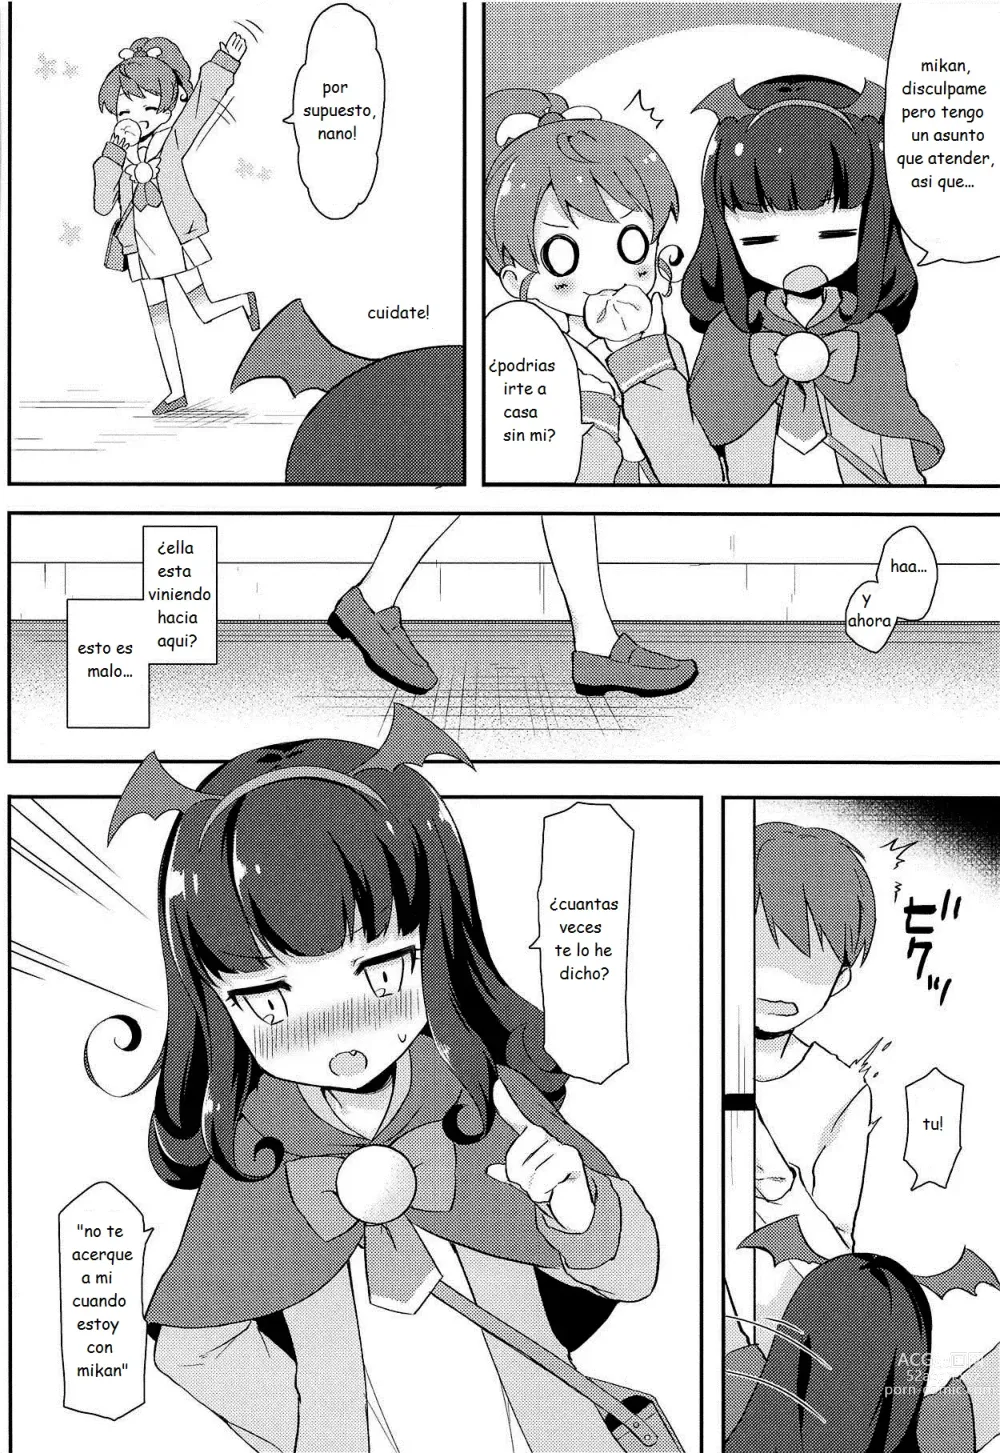 Page 3 of doujinshi sesion secreta con aroma-chan luego de la escuela